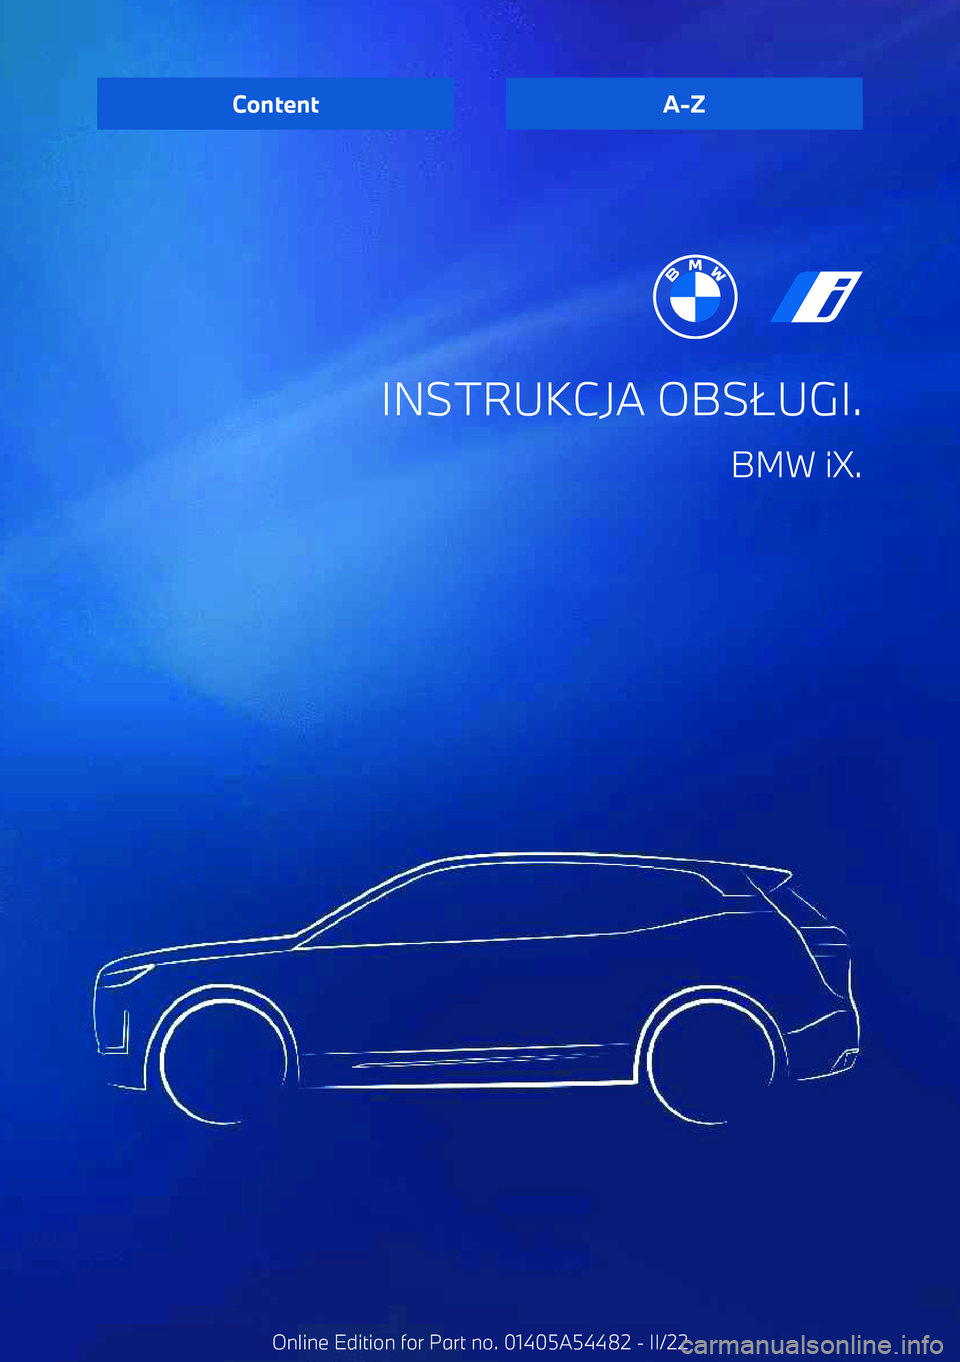 BMW IX 2022  Instrukcja obsługi (in Polish) INSTRUKCJA OBS+UGI.
BMW iX.ContentA